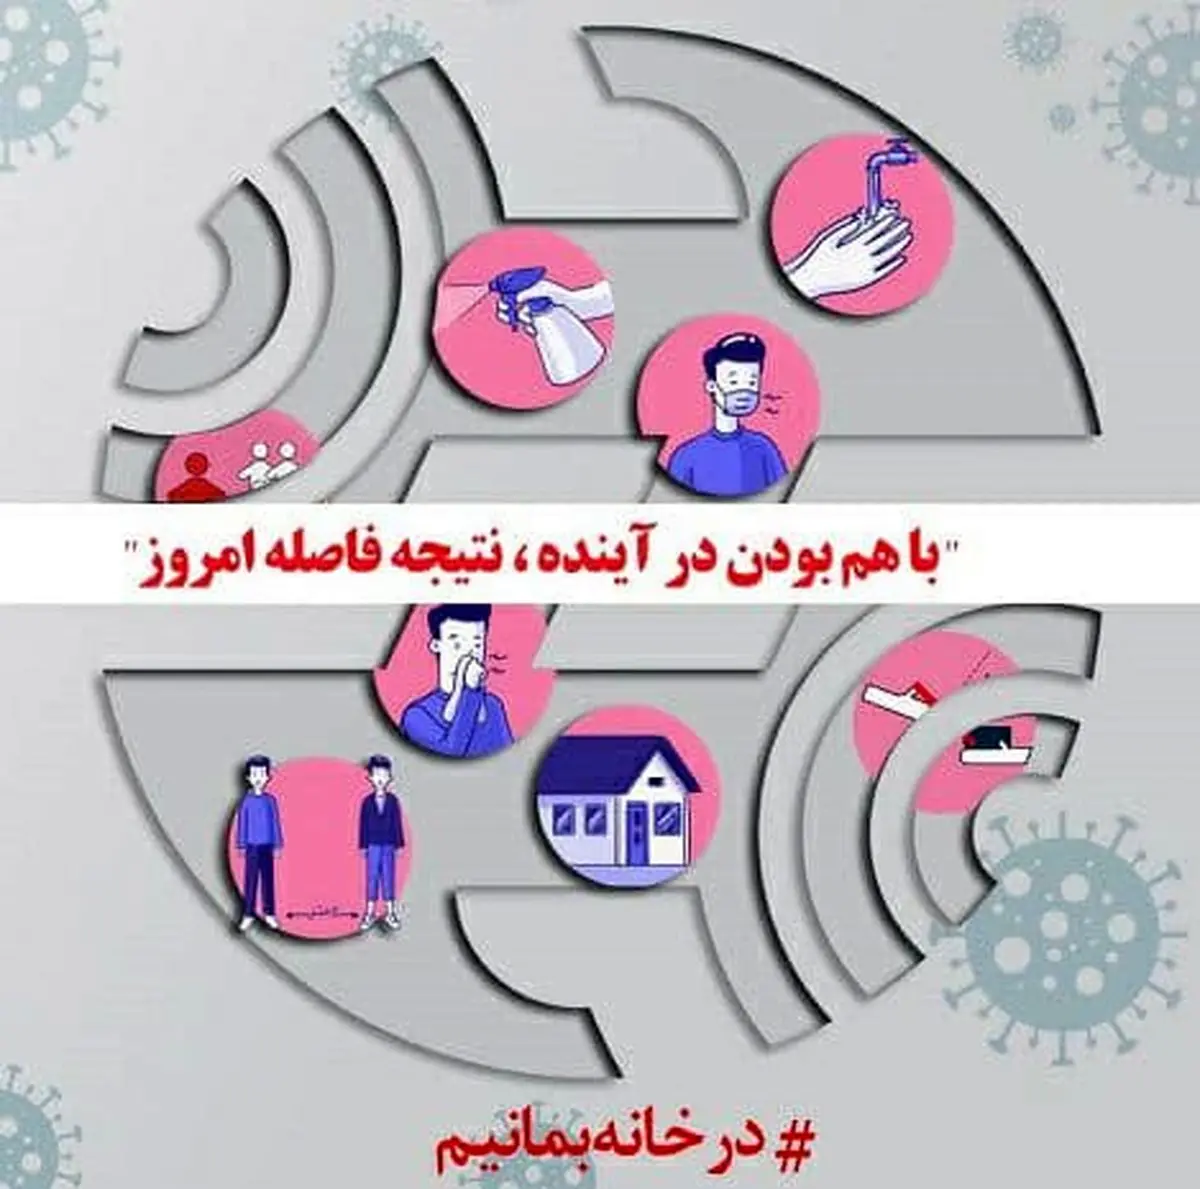 ادارات مخابرات ستاد و مناطق تهران و البرز تا یکشنبه آینده تعطیل است

